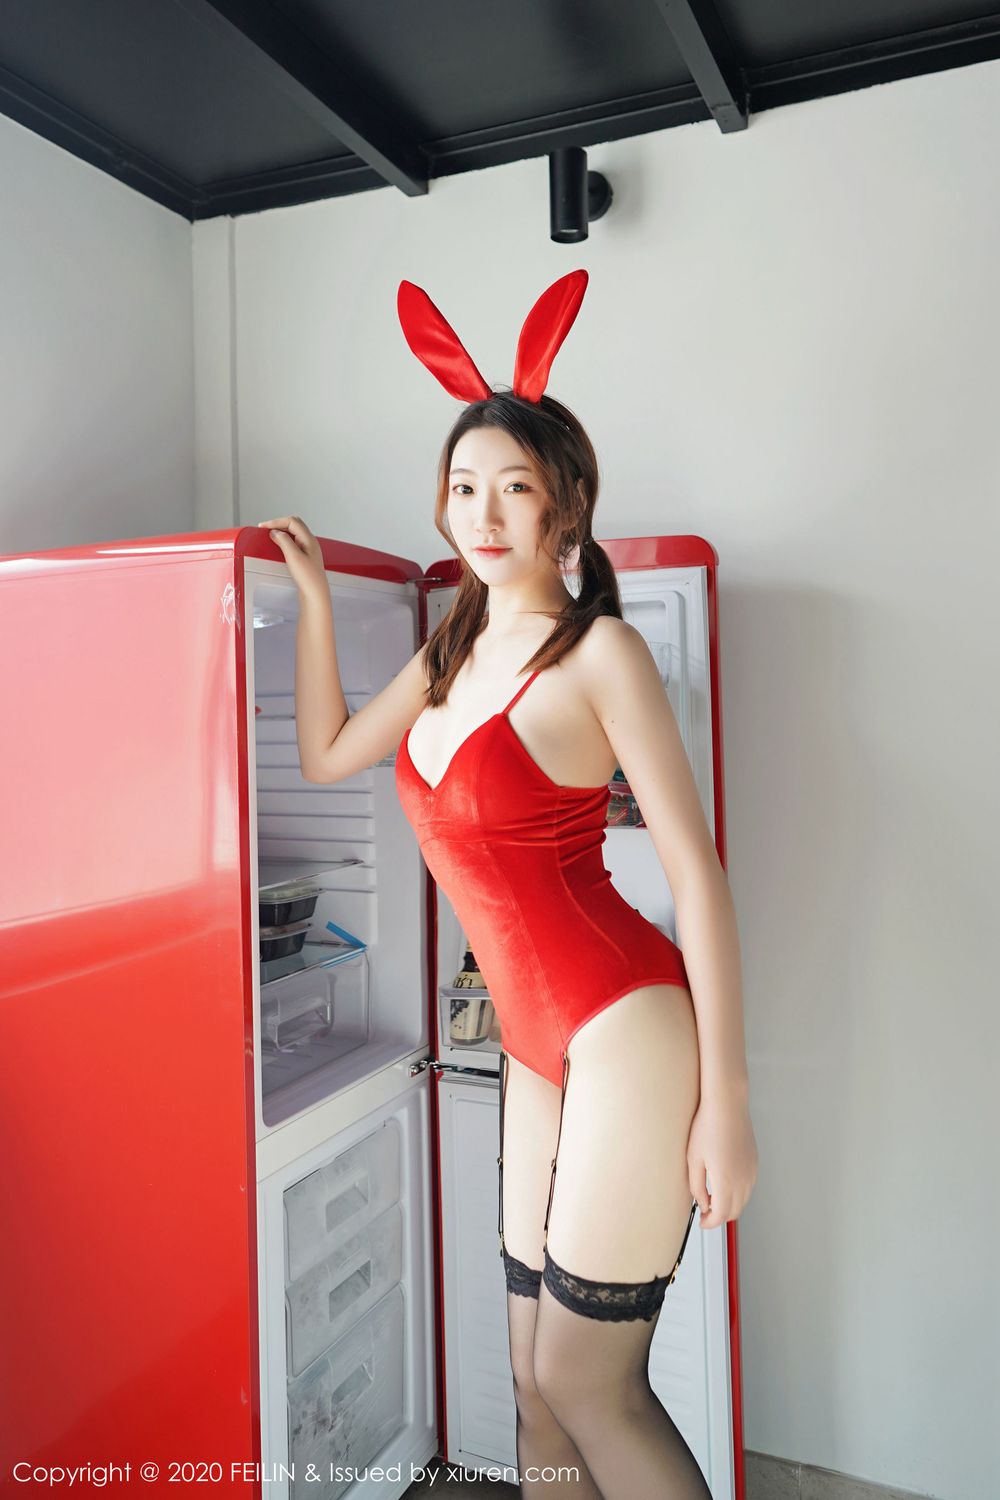 美女模特A.小熊猫 - 黑丝美腿+兔女郎装扮情趣写真